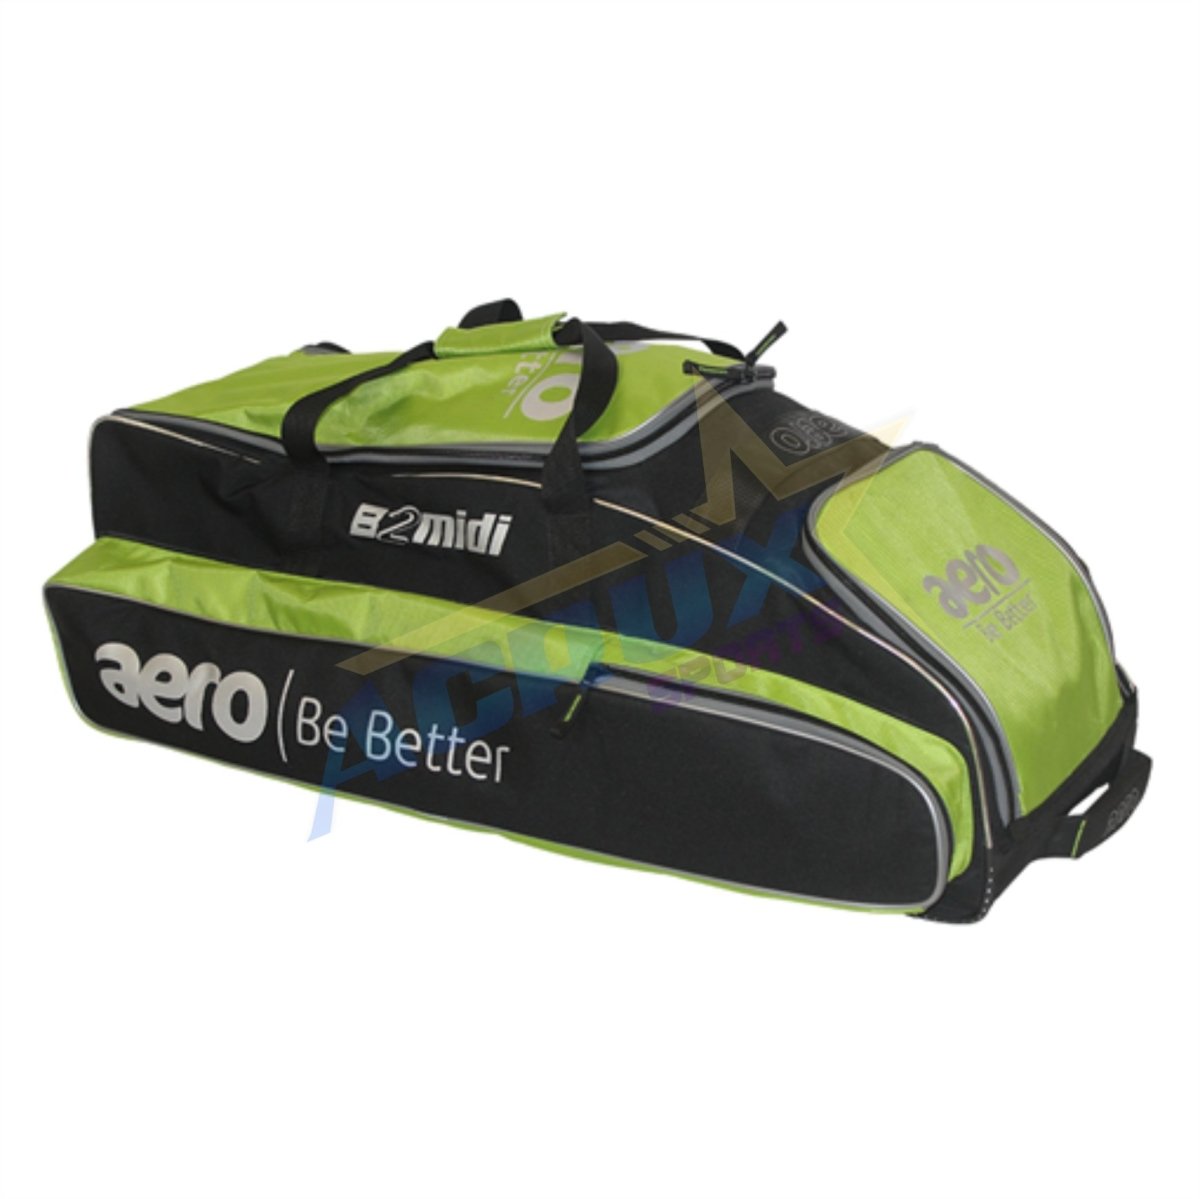 Aero B2 Midi Wheelie Cricket Kit Bag.